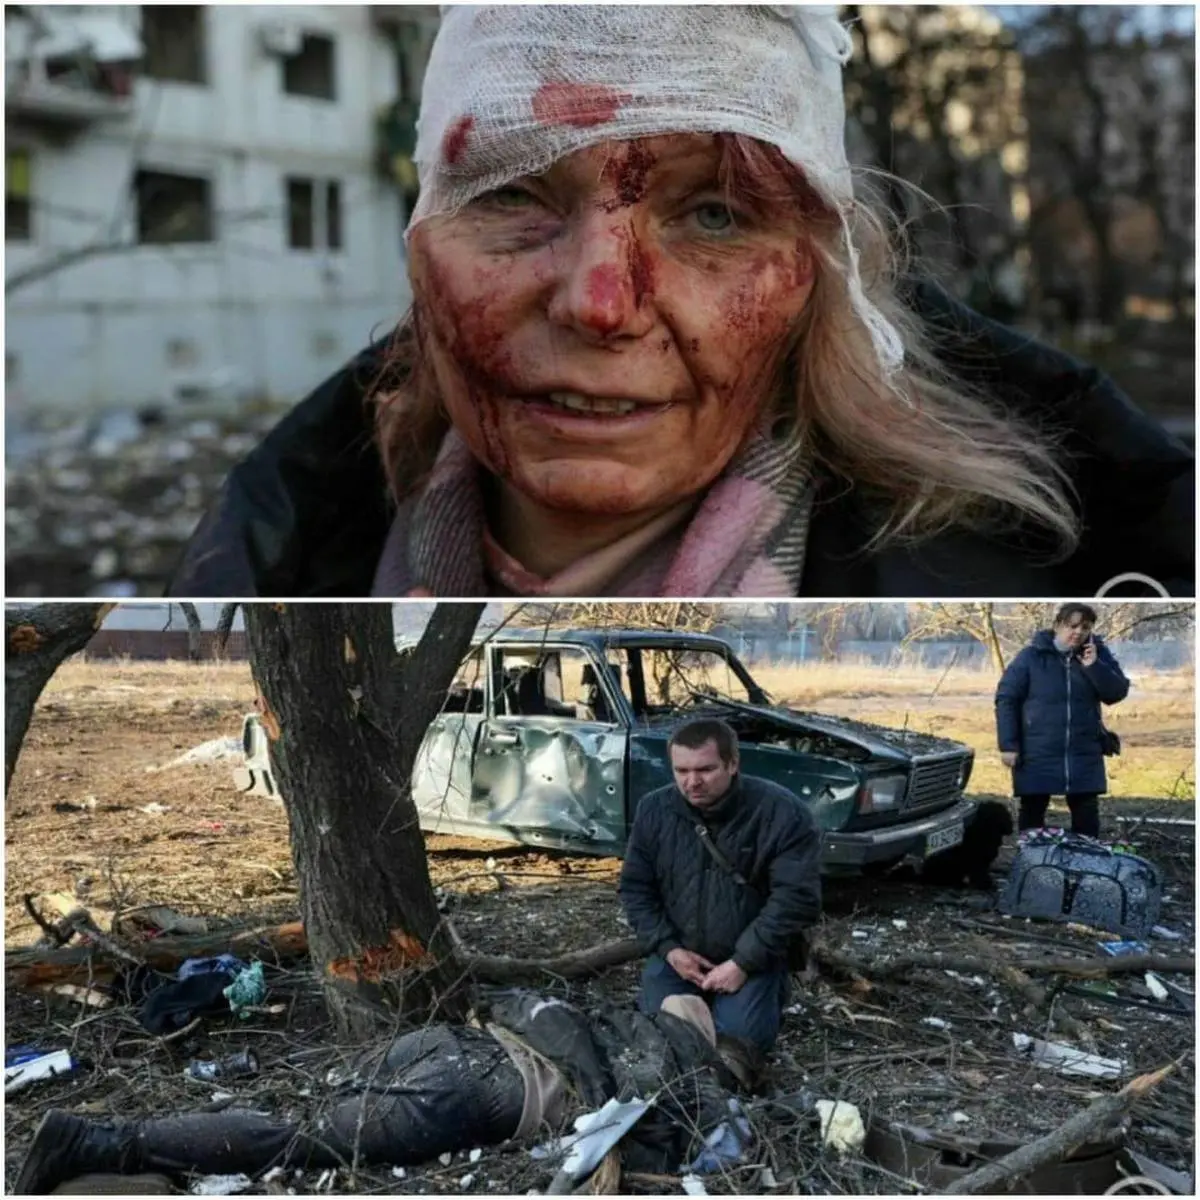 عکس جگرسوز از پیرمرد اوکراینی دلها را لرزاند | روسیه آرامش را از اوکراین گرفت